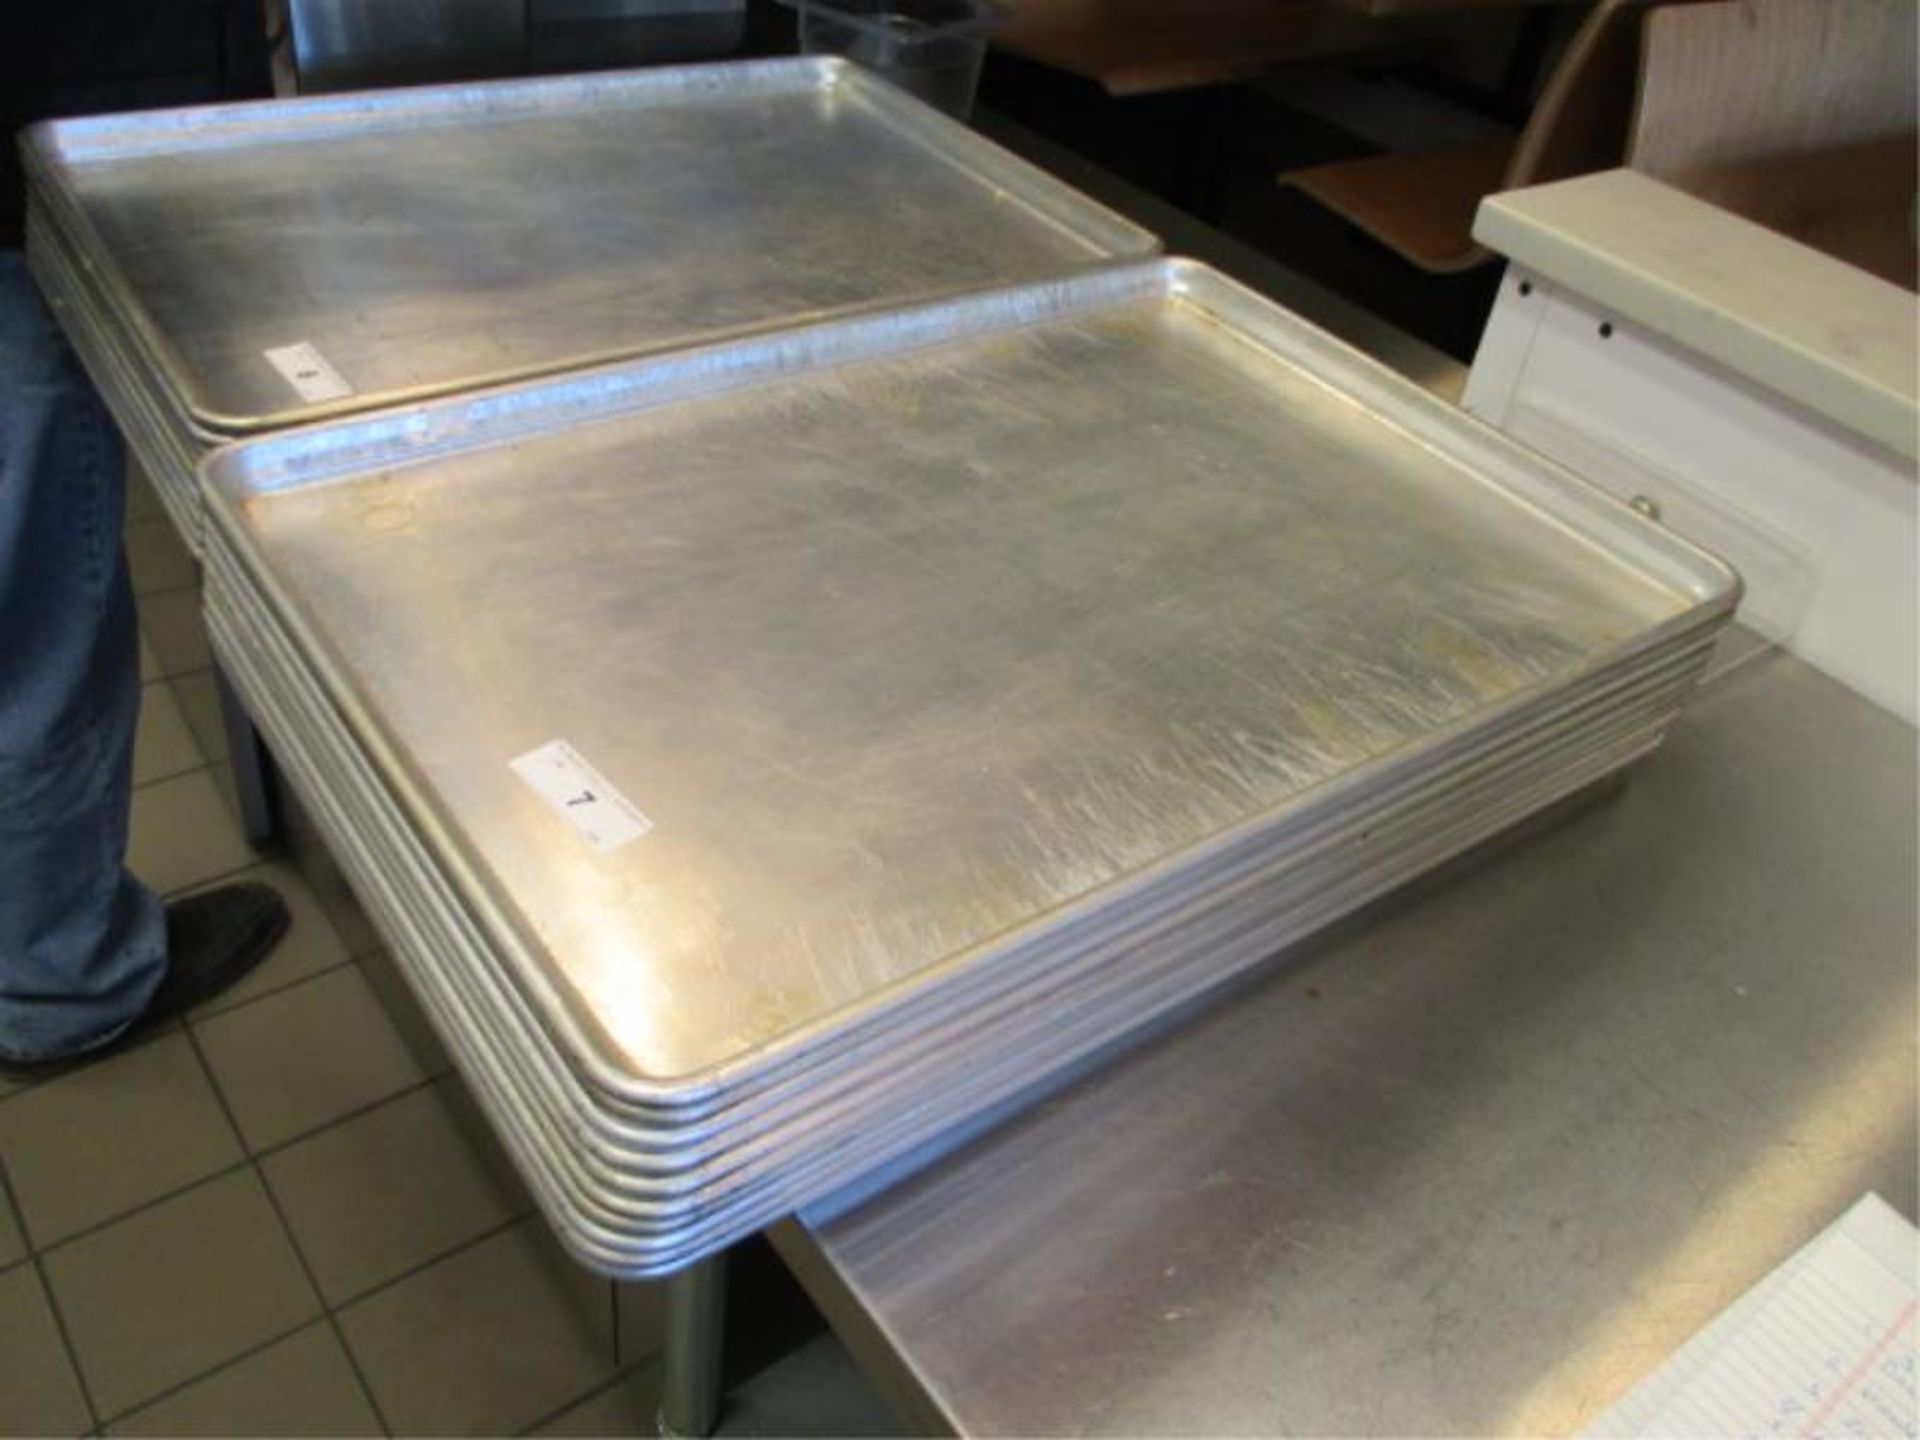 (10) Aluminum Sheet Pans